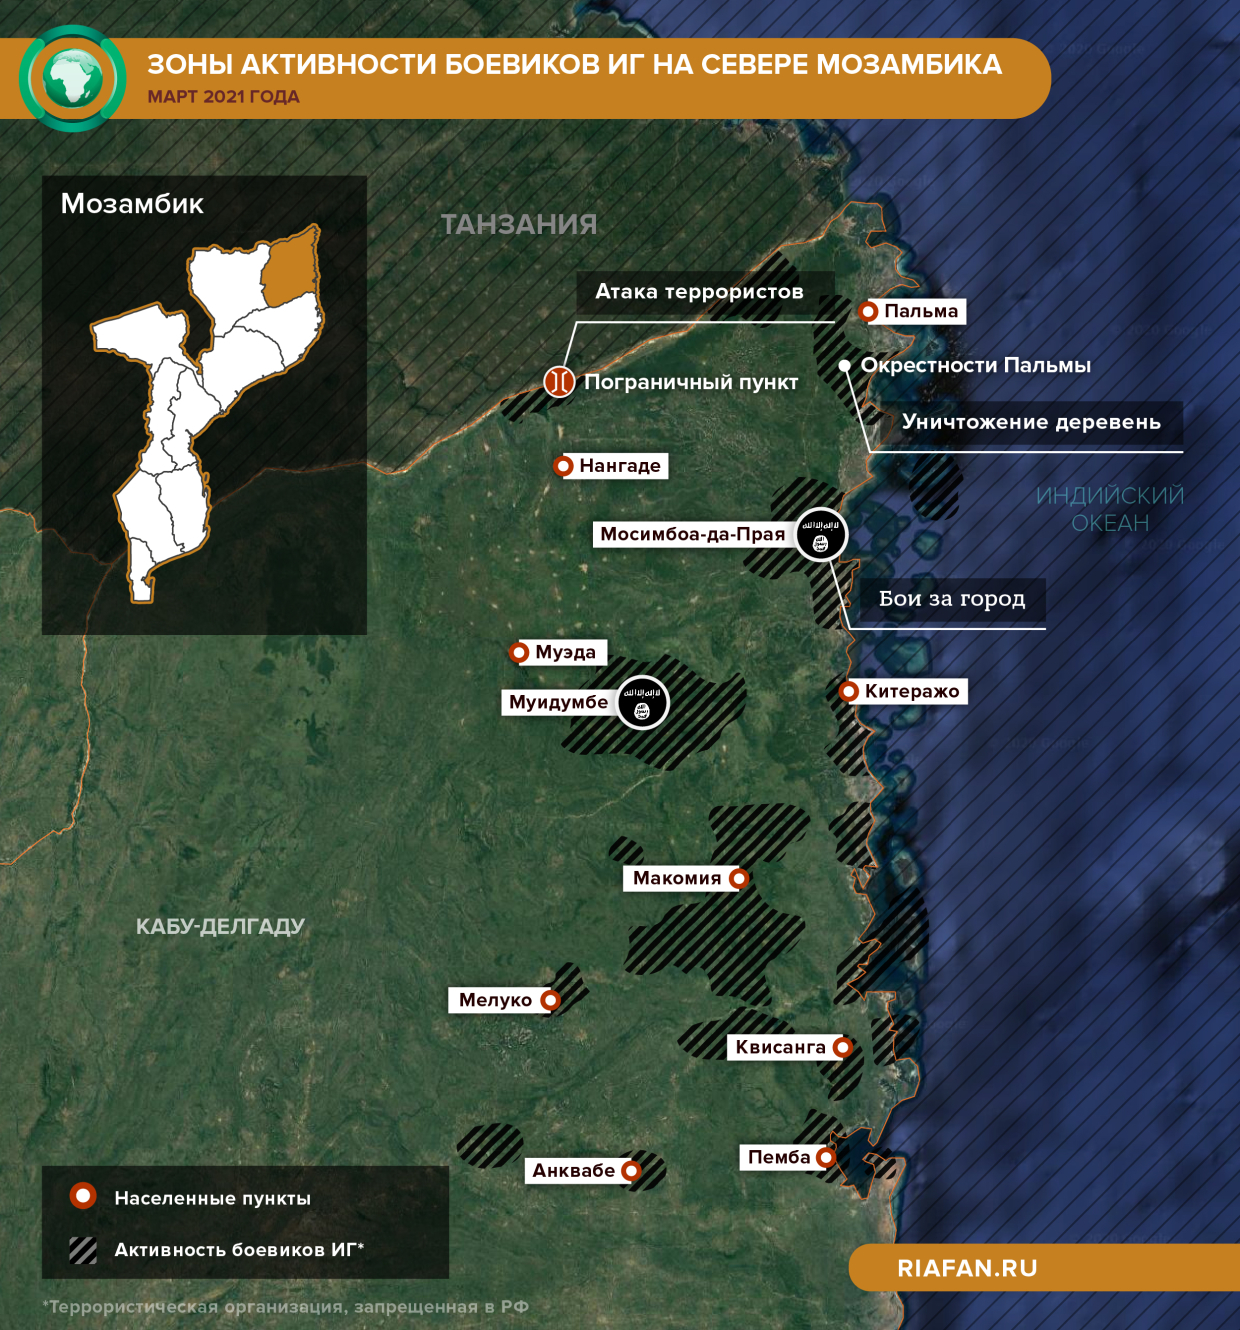 Казни и похищения: как террористы превращают газовую провинцию Мозамбика в халифат